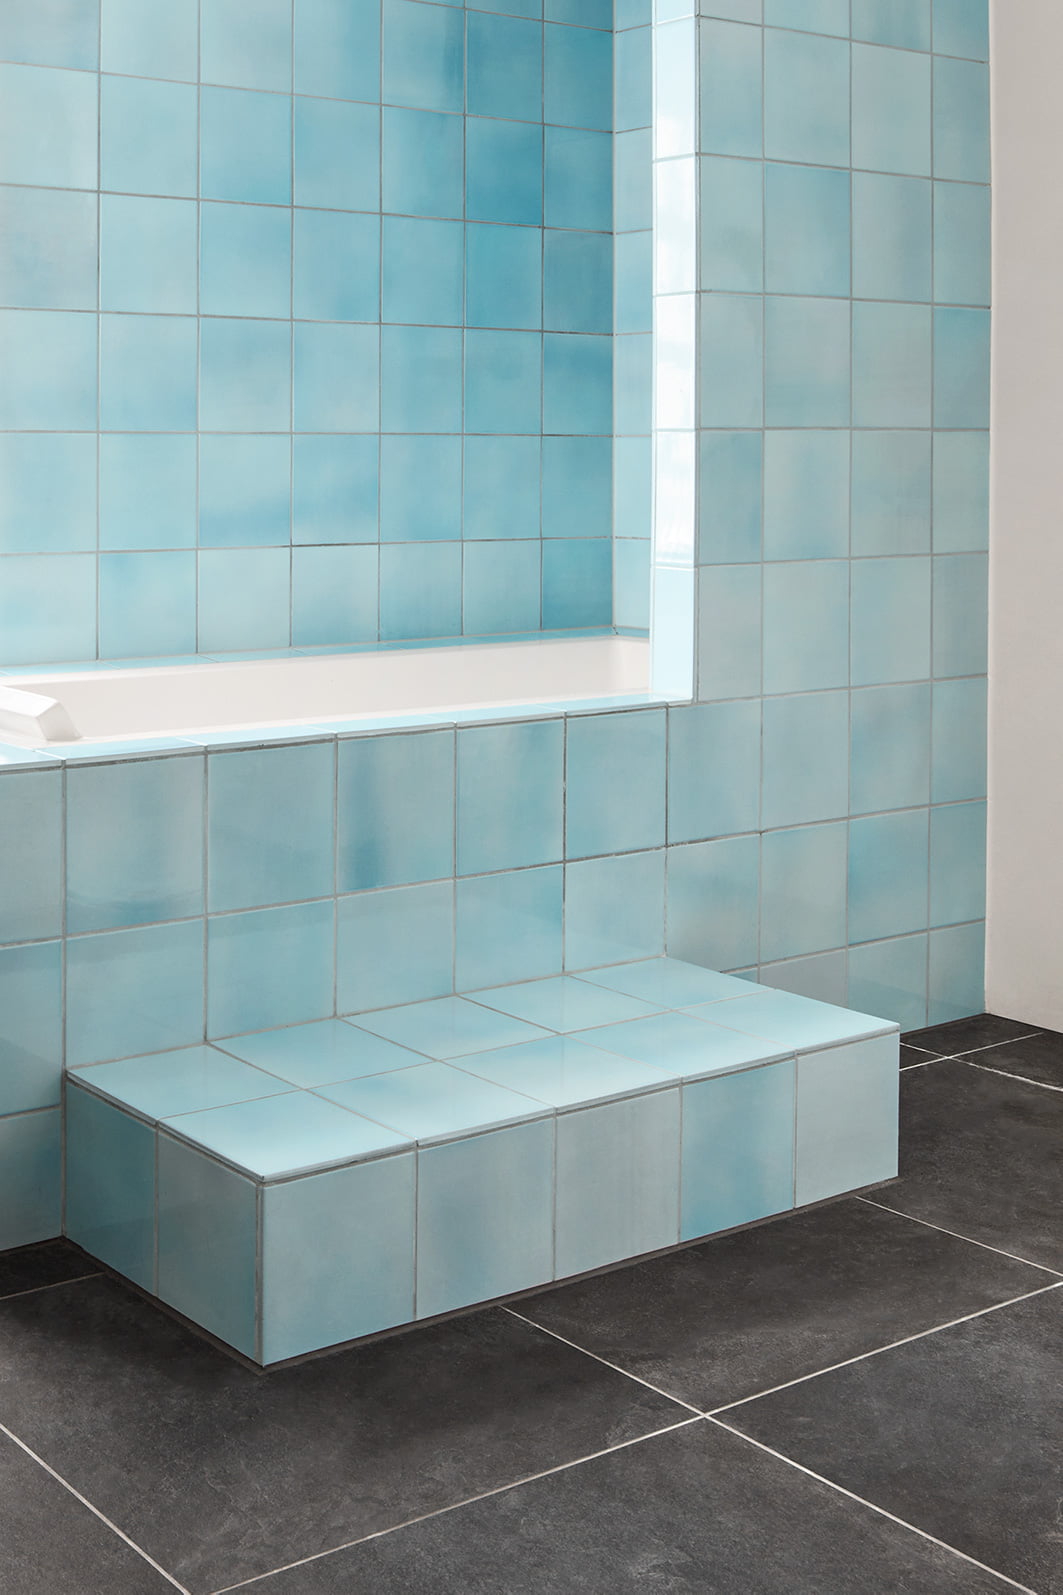 Sky blue terracotta bathroom - Made a Mano